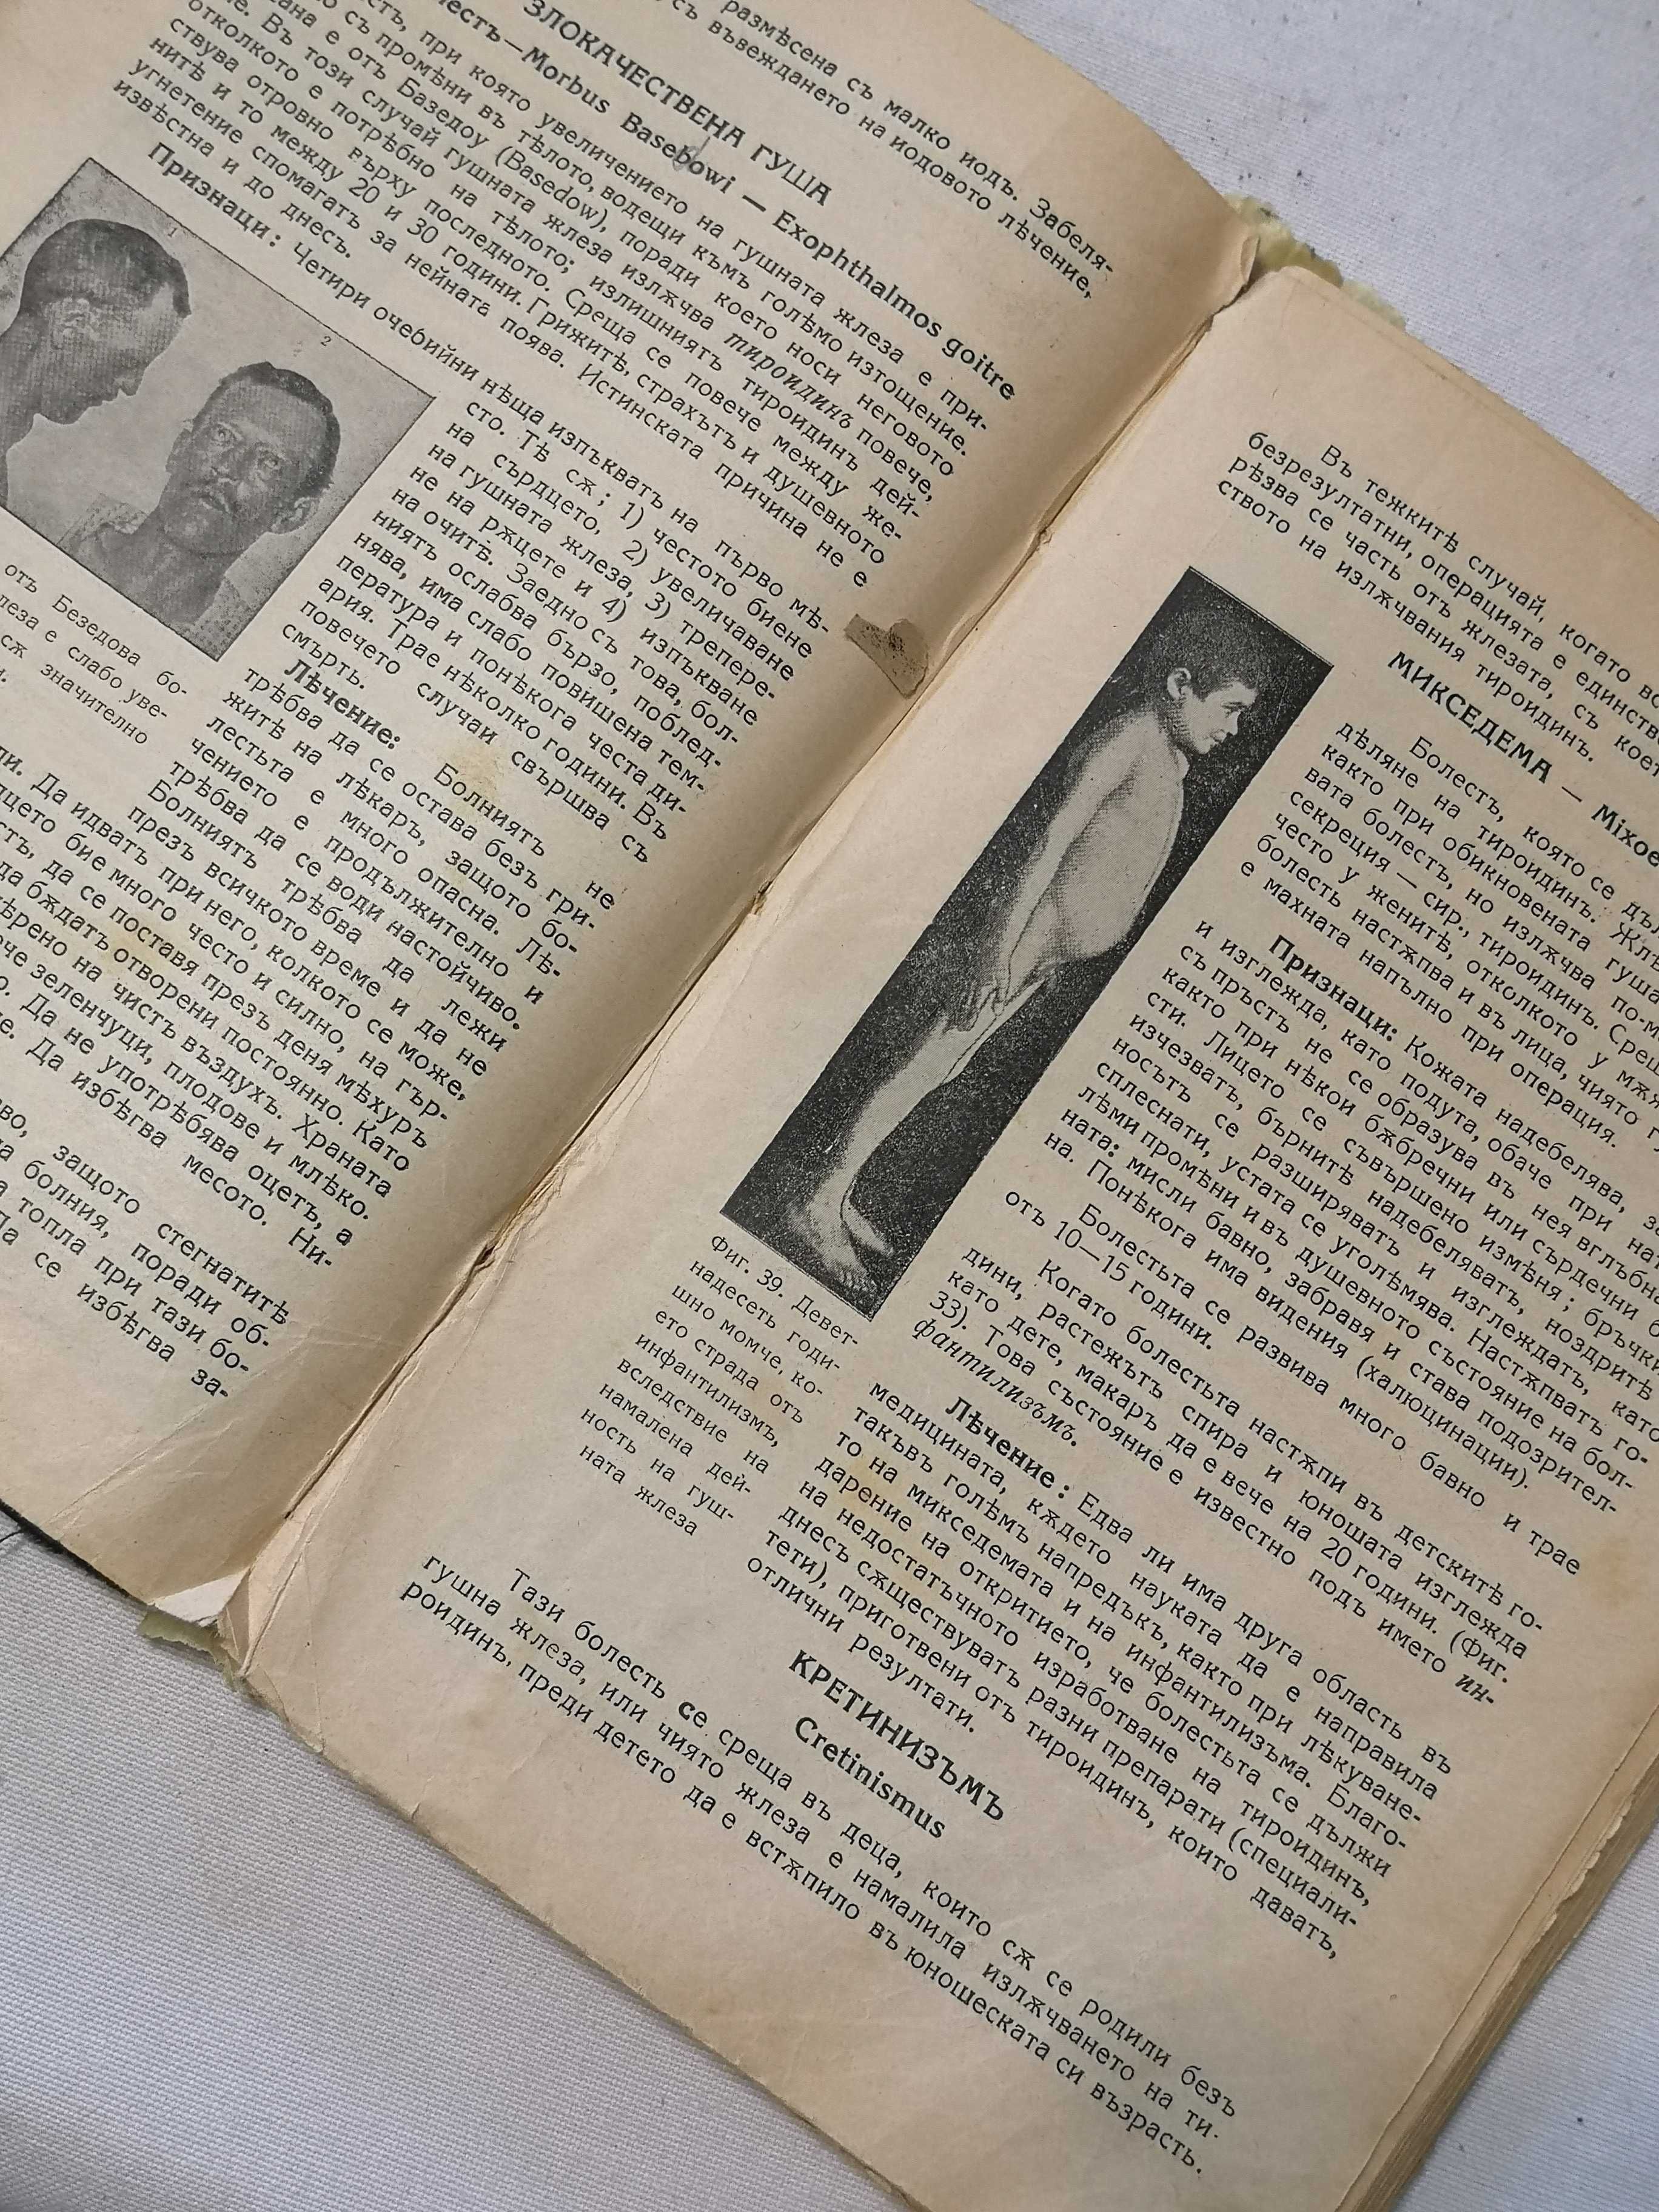 Рядка Стара Книга Домашен Лекар 1932 г от д-р Г Ефремов